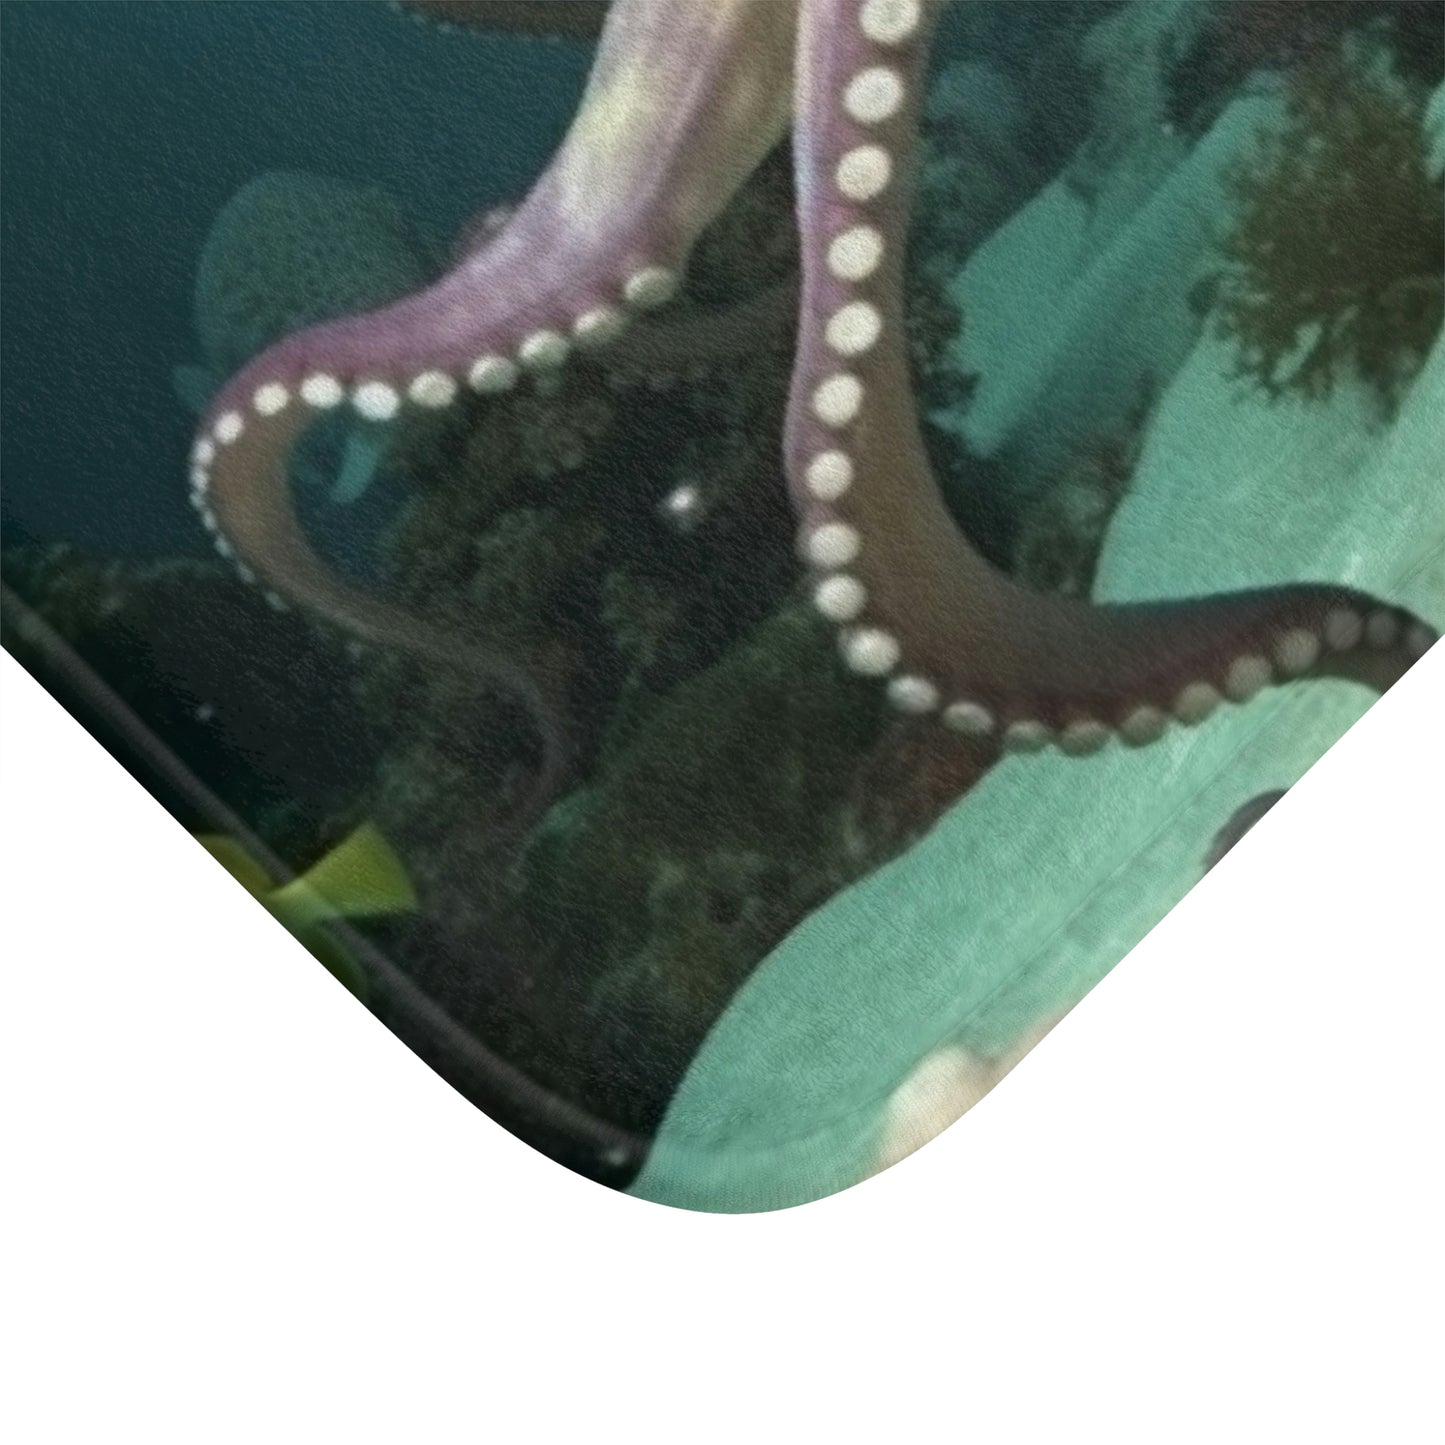 Octopus Bath Mat